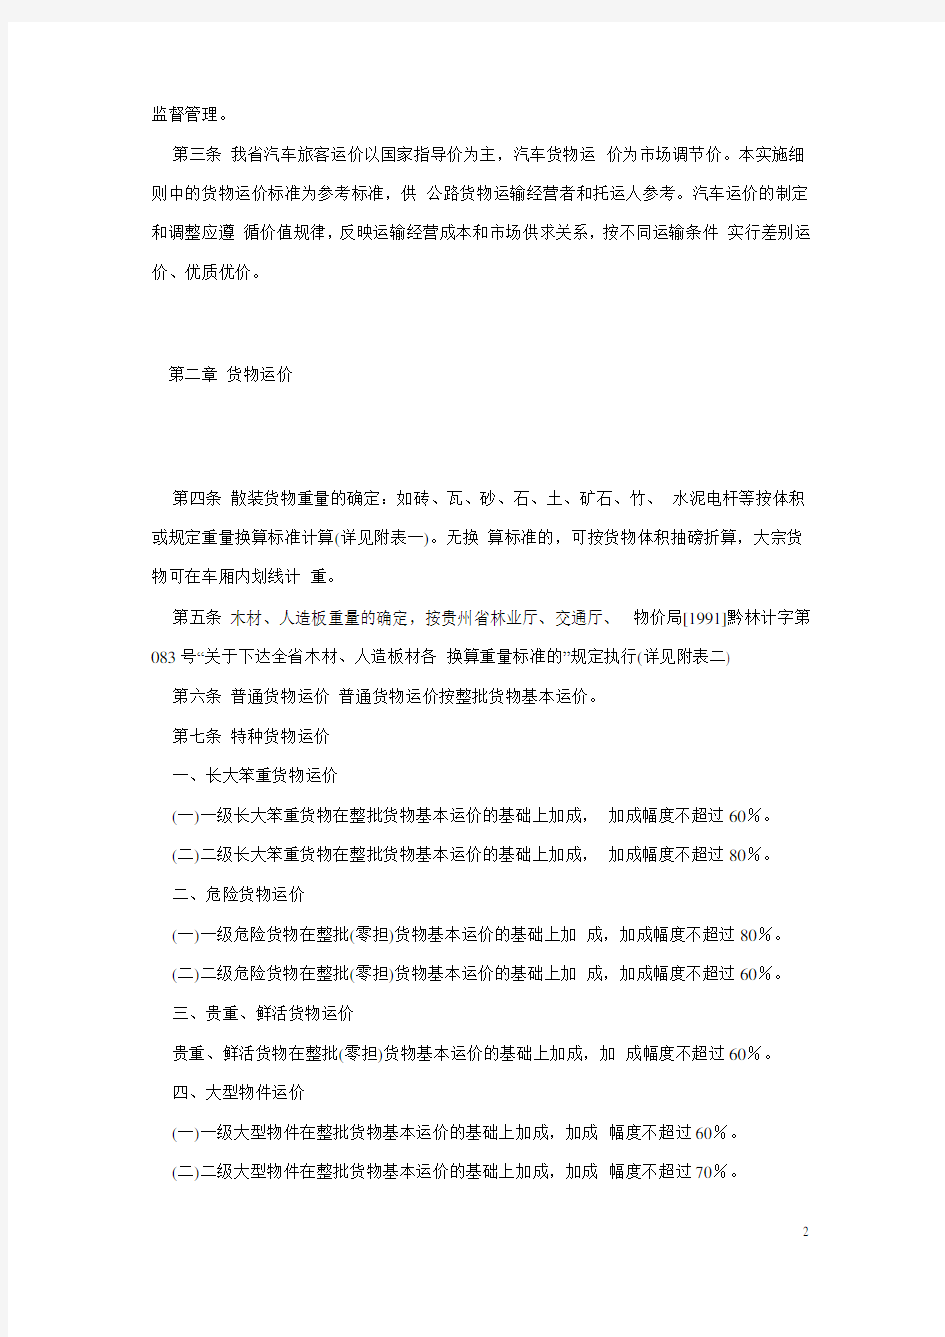 黔交财[2002]39号-贵州省汽车运价规则实施细则